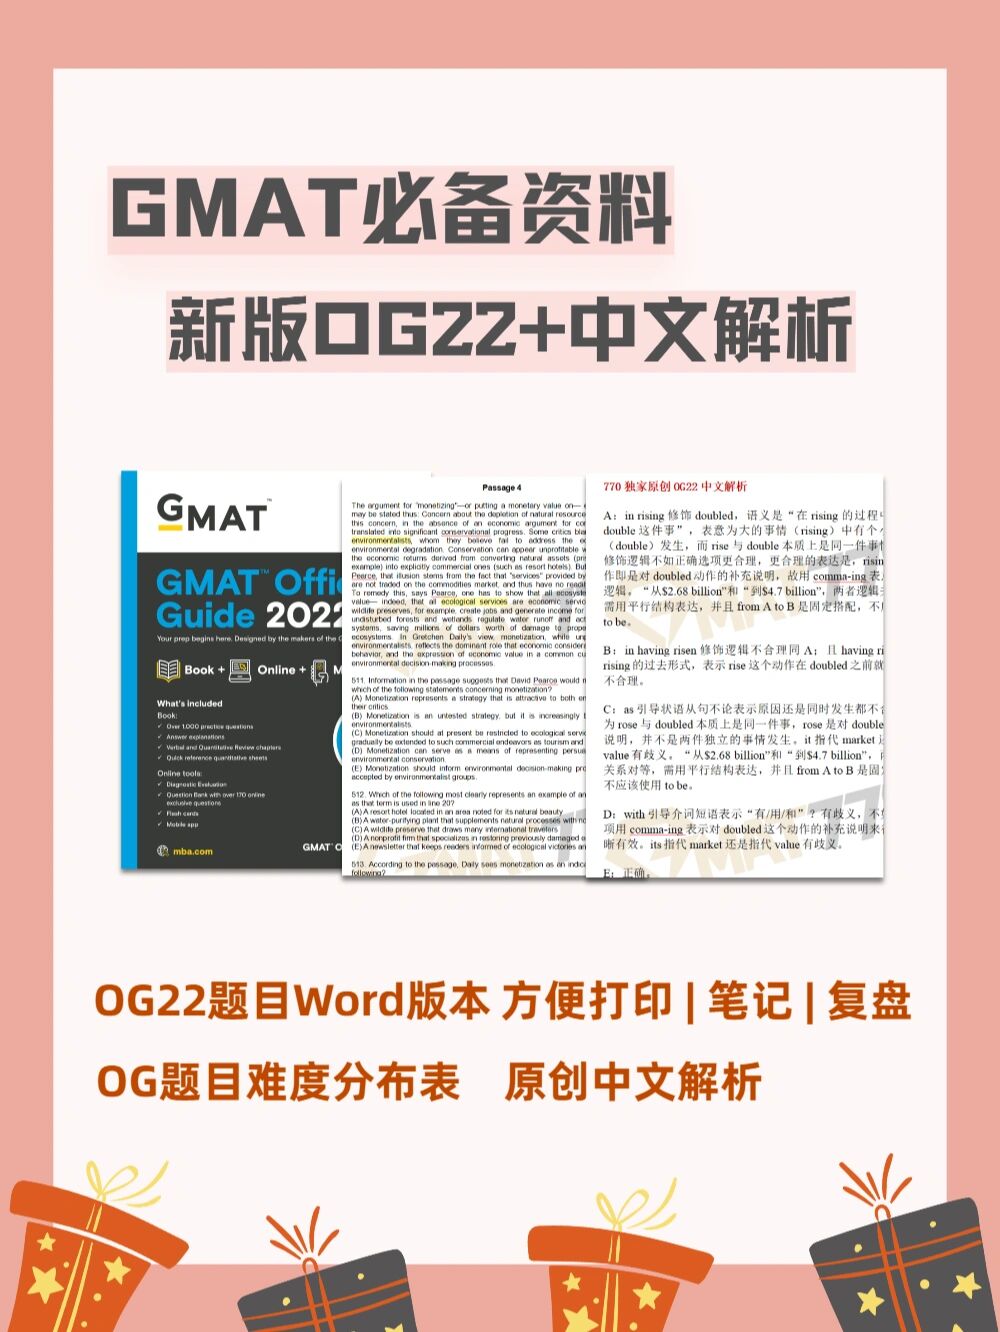 超详细的GMAT必备资料中文解析